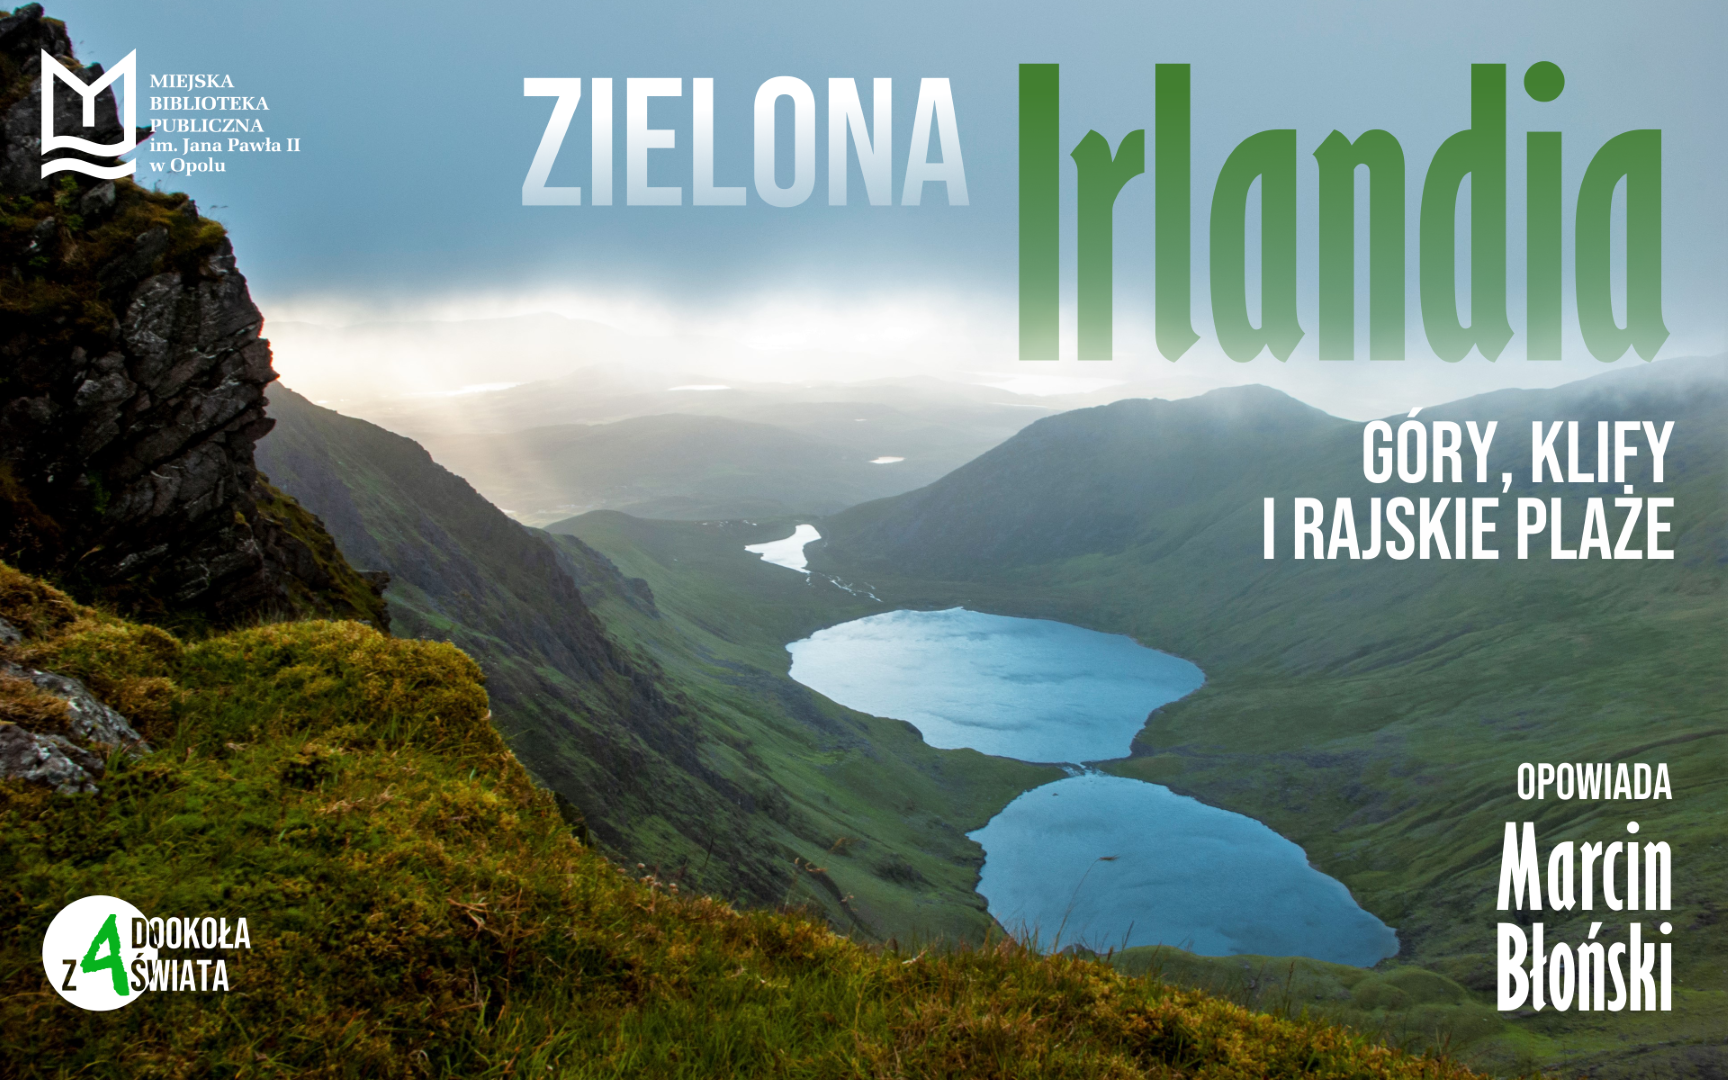 Zielona Irlandia – góry, klify i rajskie plaże – spotkanie z podróżnikiem Marcinem Błońskim